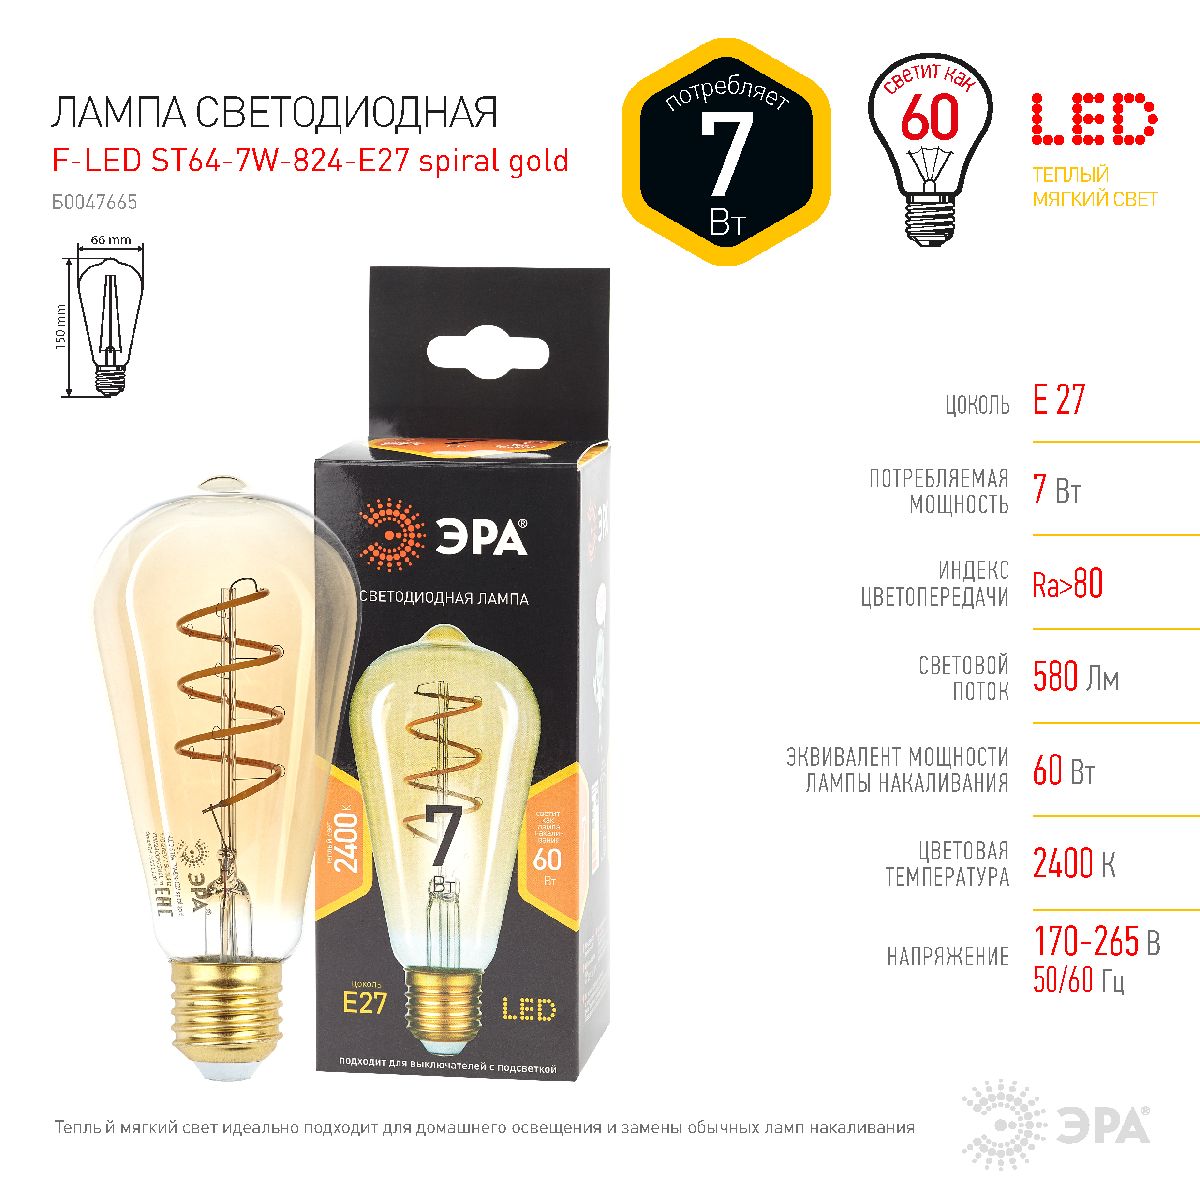 Лампа светодиодная Эра E27 7W 2400K F-LED ST64-7W-824-E27 spiral gold Б0047665